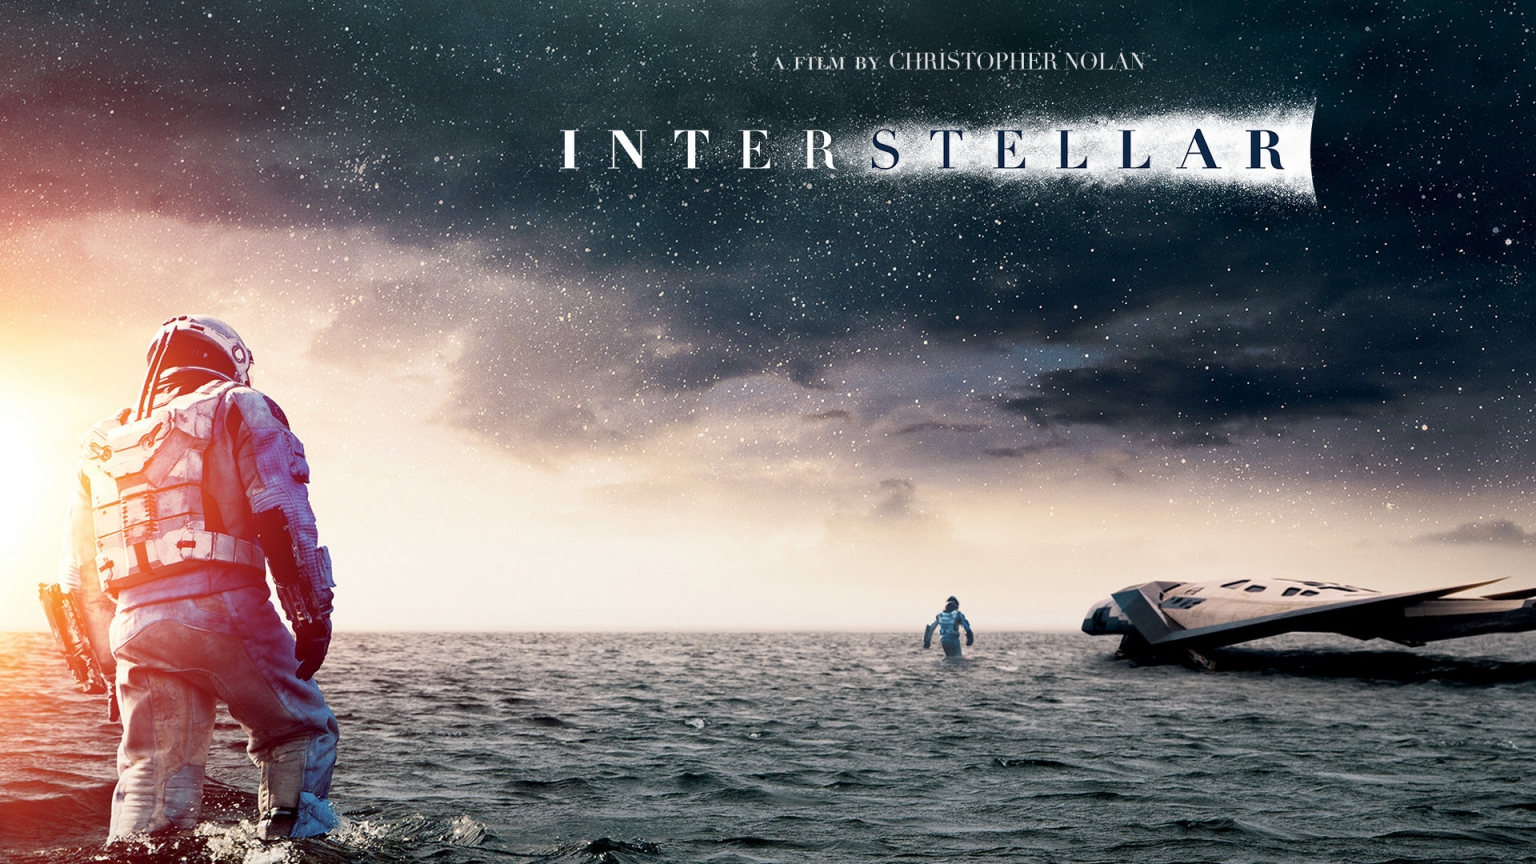 Interstellar 2014 Movie for 1536 x 864 HDTV resolution